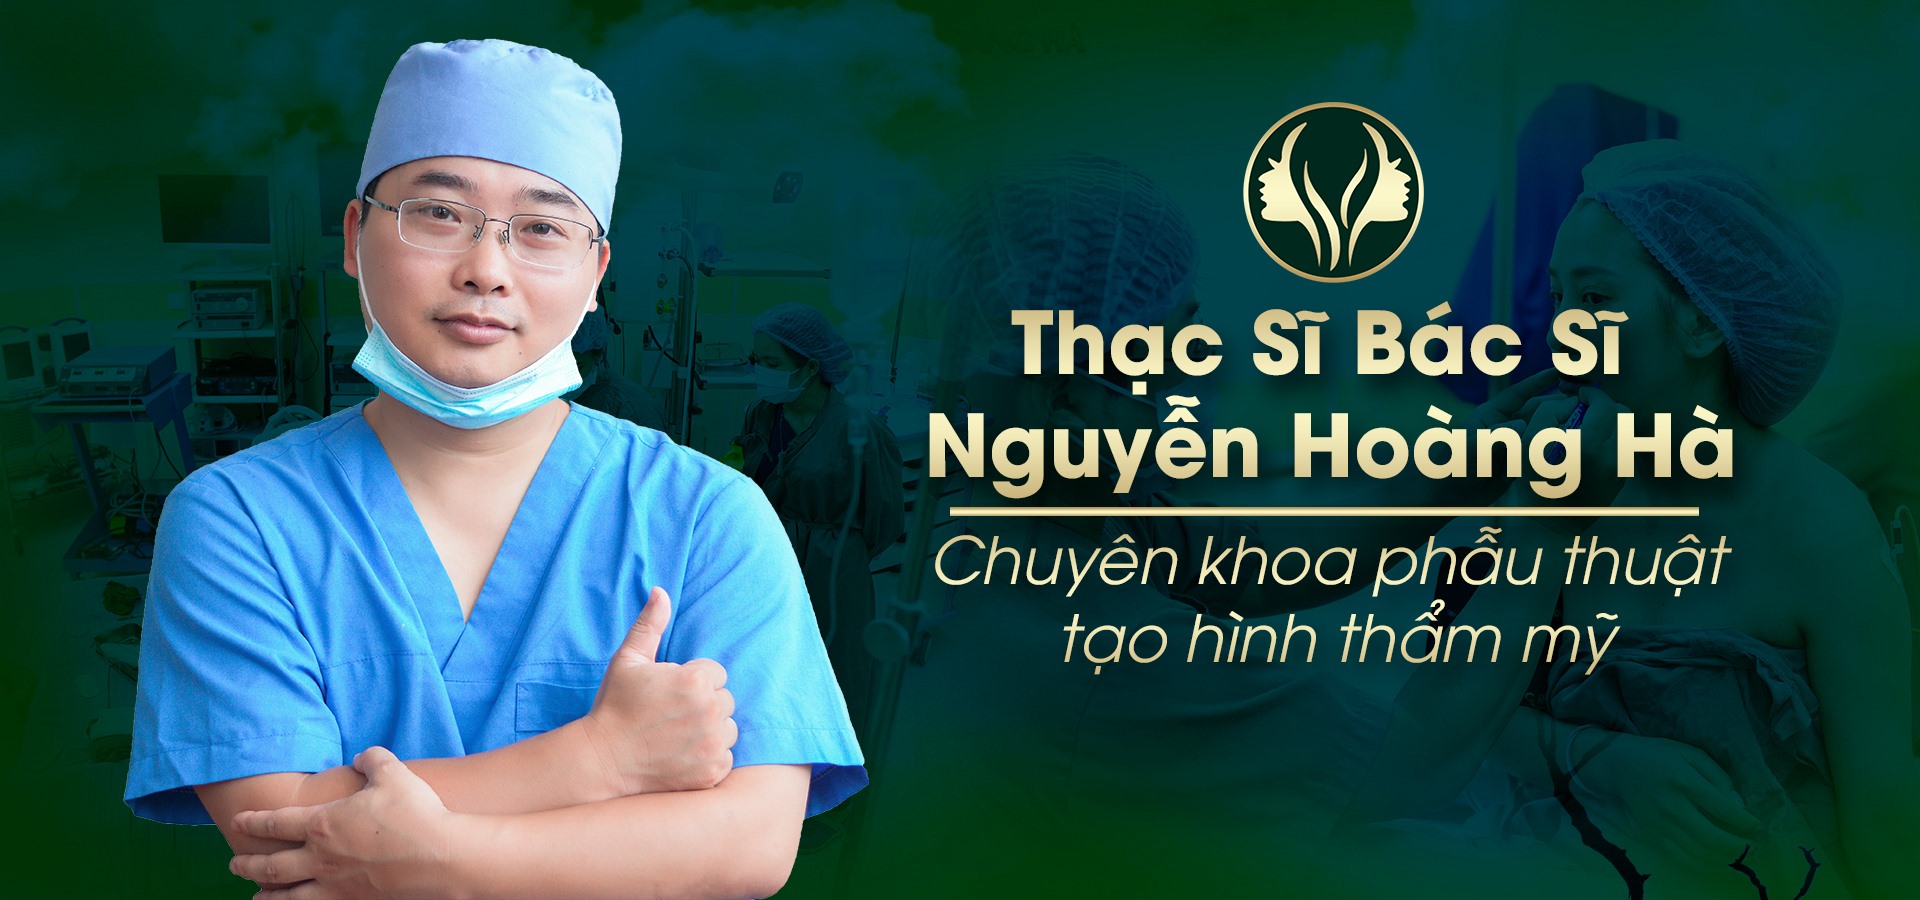 Tại Dr Hoàng Hà 100% các ca PTTM đều được trực tiế Ths.BS Nguyễn Hoàng Hà tư vấn và lên phác đồ điều trị